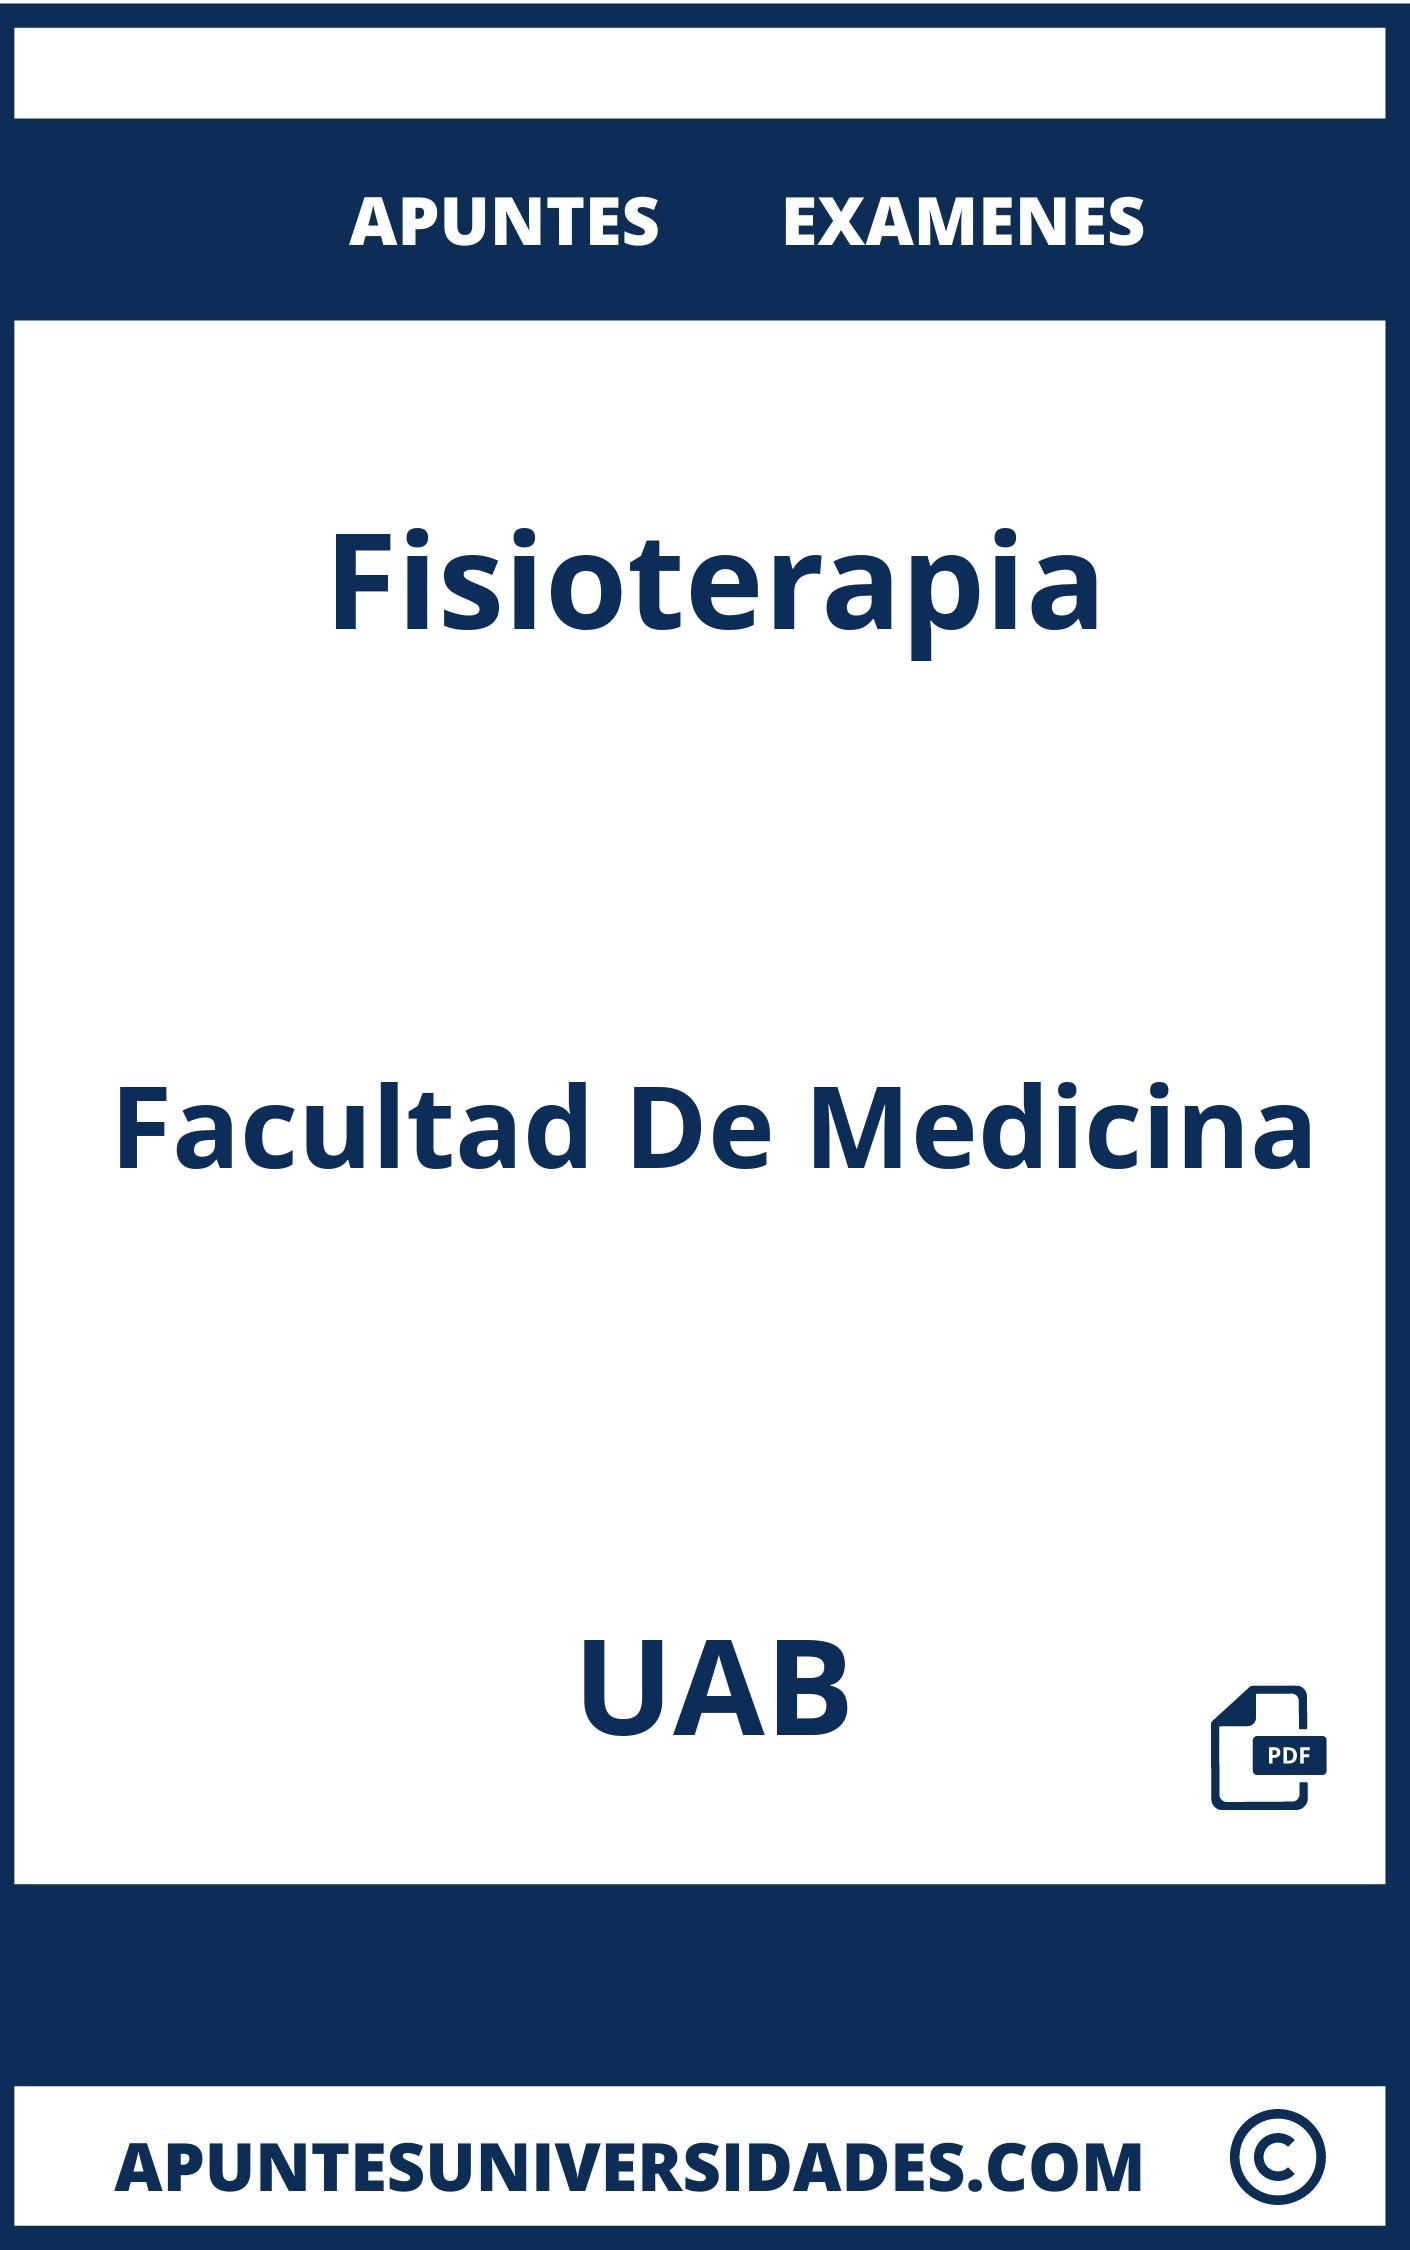 Examenes y Apuntes Fisioterapia UAB